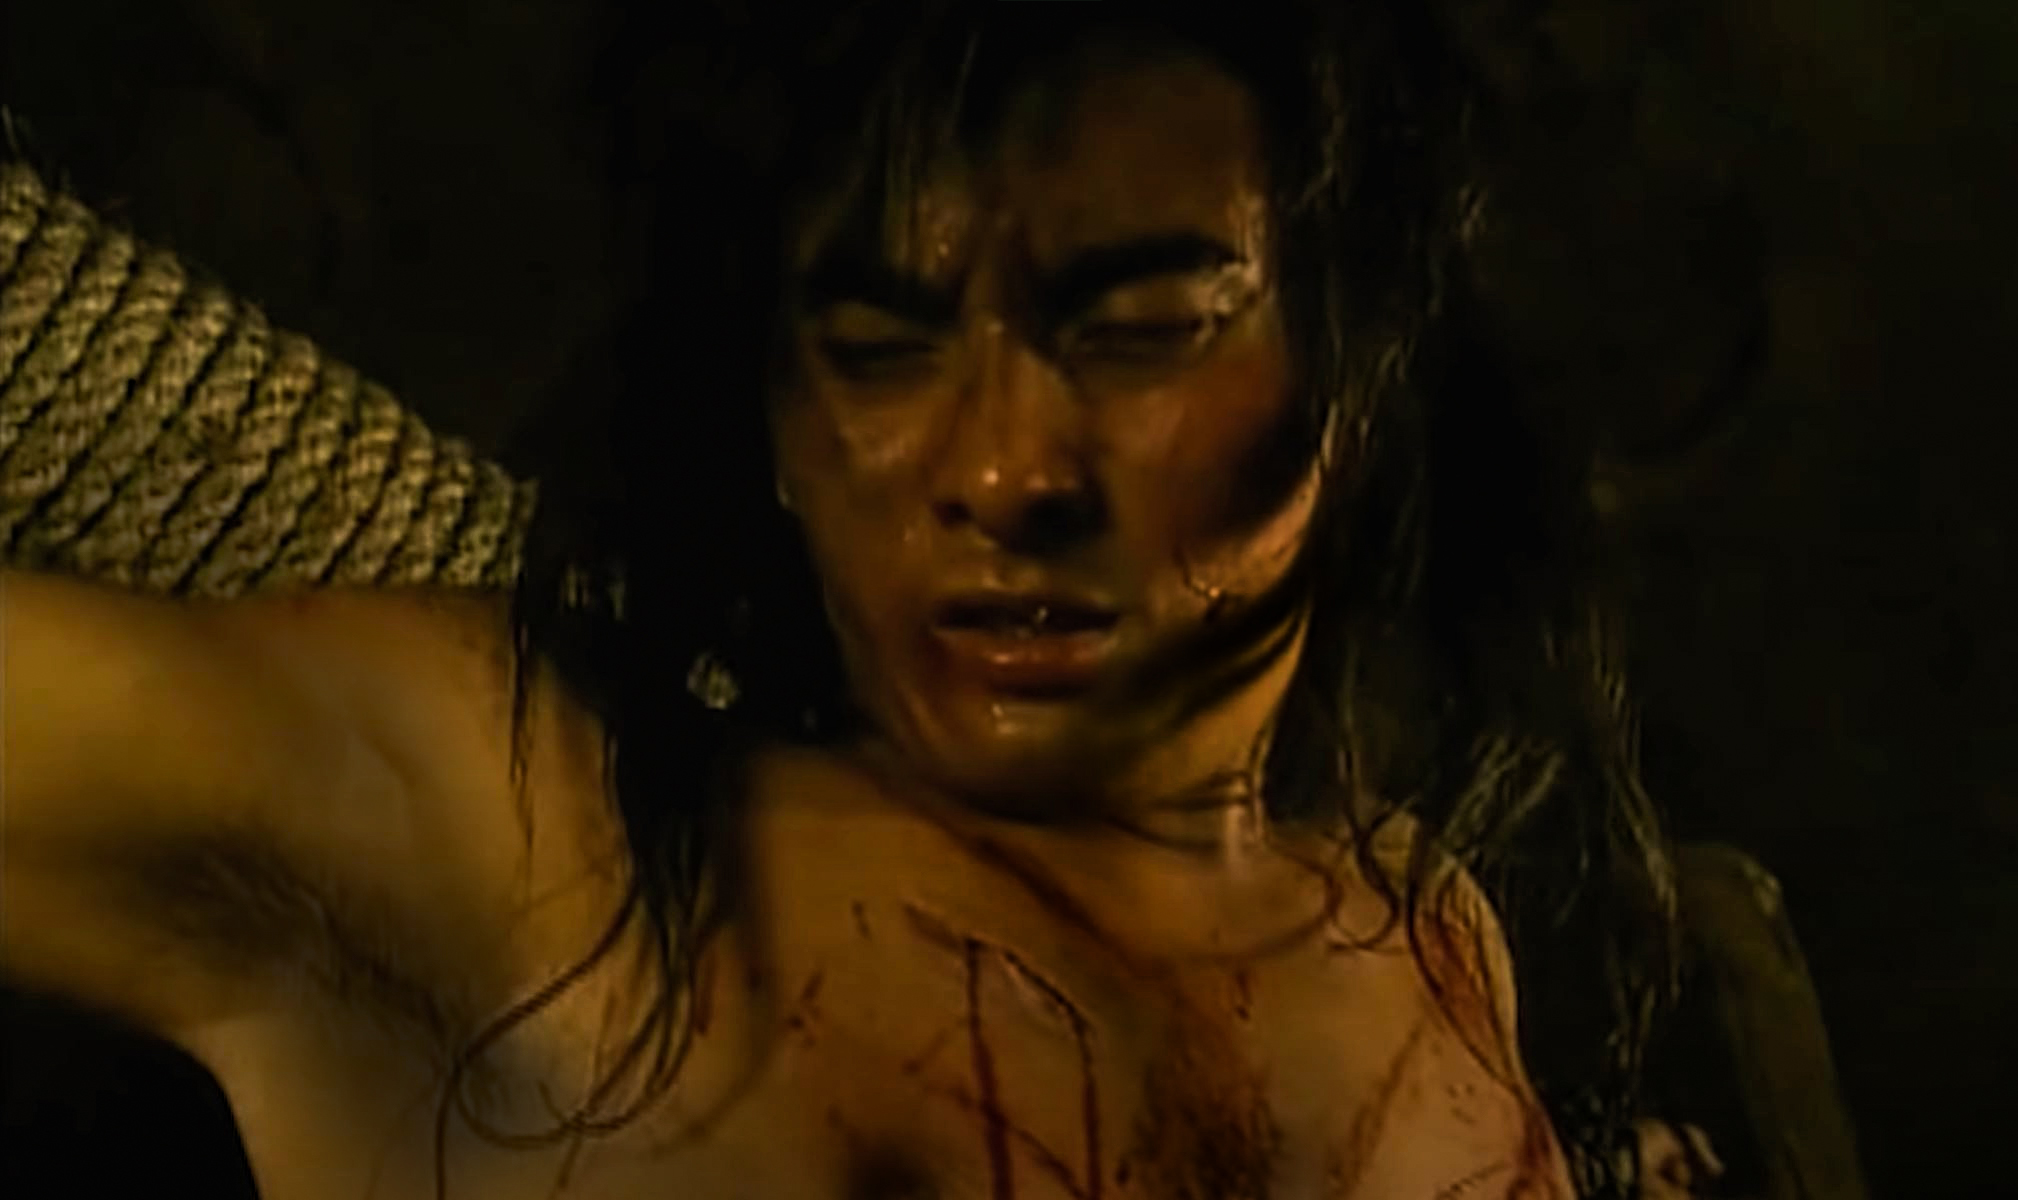 Torture a man cruelly (Movie scene)